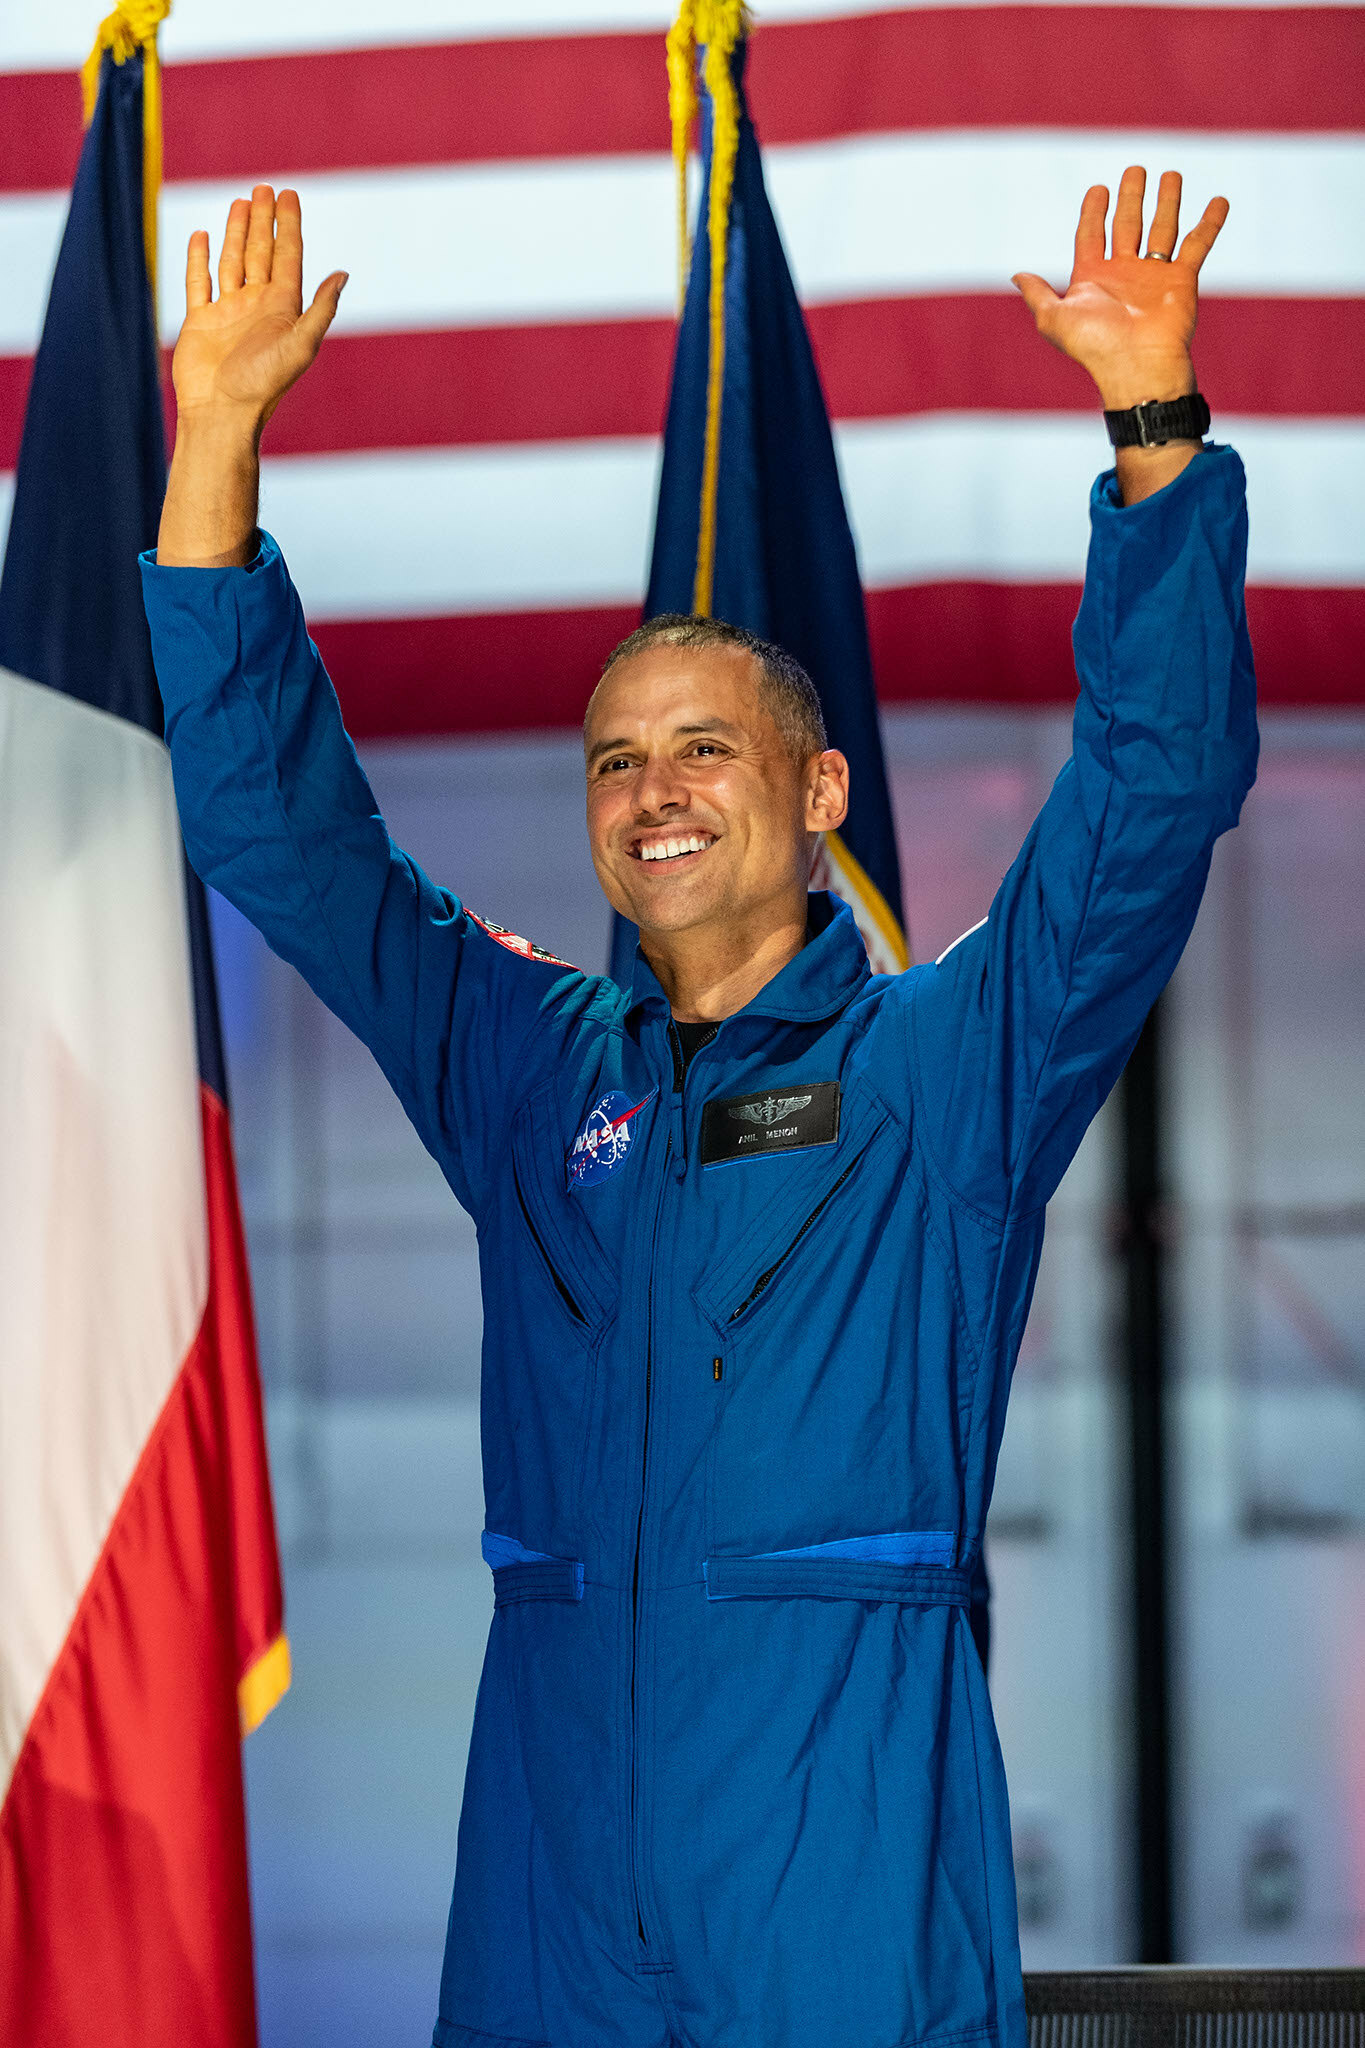 Il Dr. Anil Menon, 45 anni, annunciato all'evento Astronaut Candidate 2021 della NASA